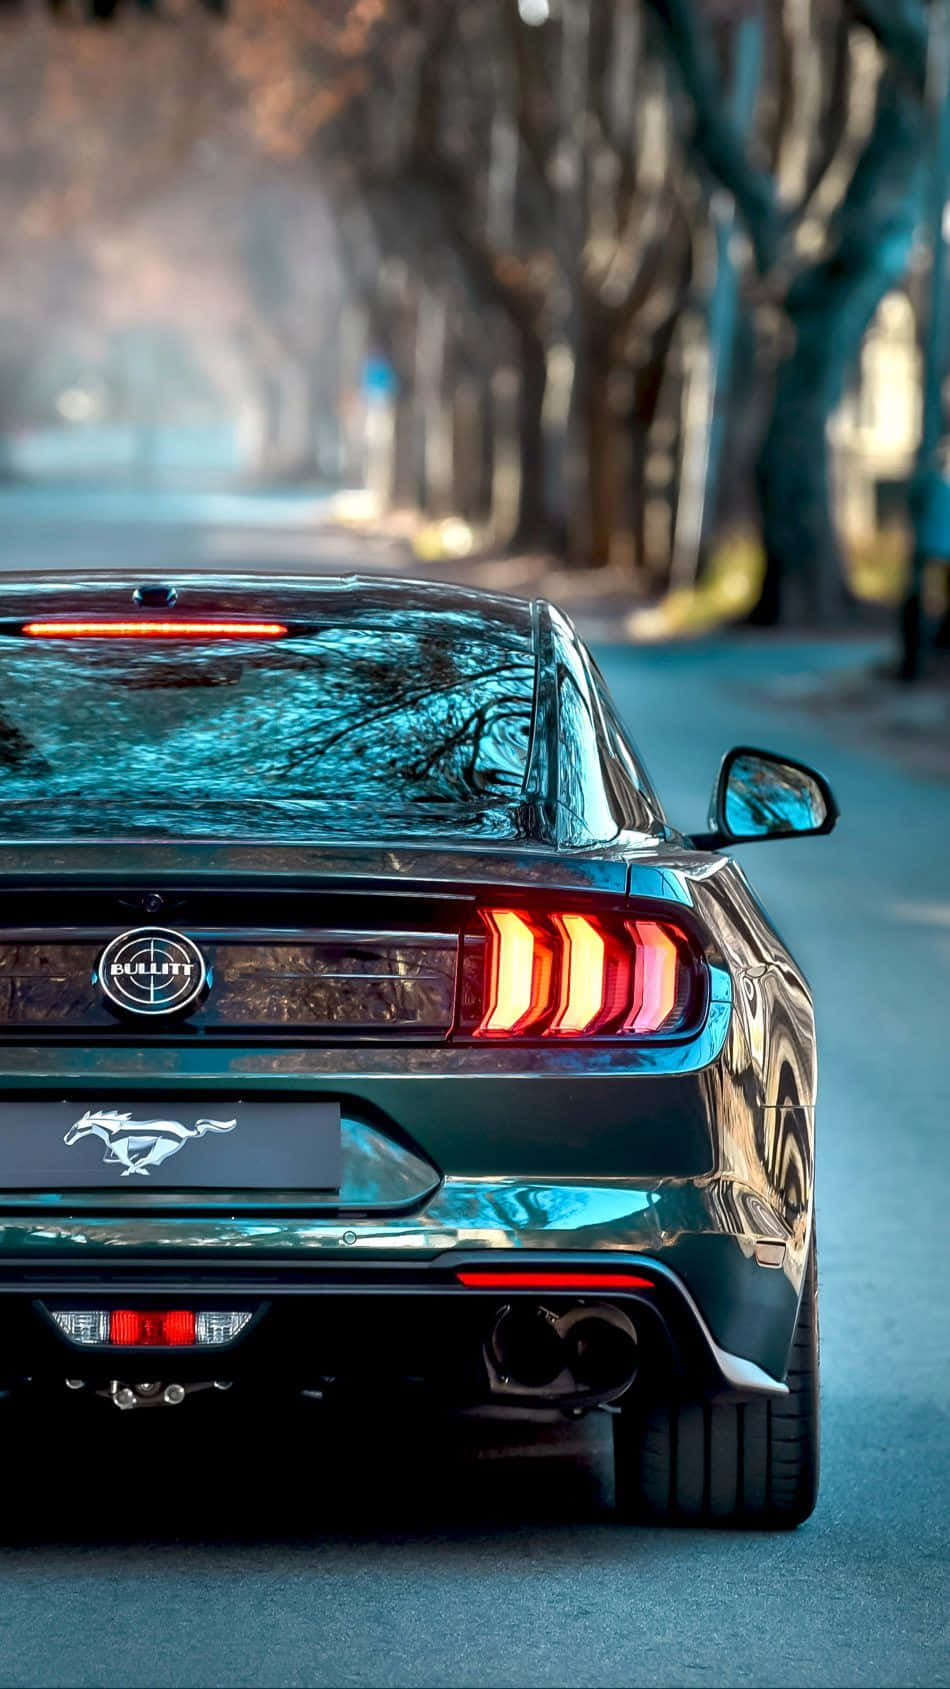 Ford Mustang 2019 Bullitt Sportsbil Model Ændring Wallpaper Wallpaper